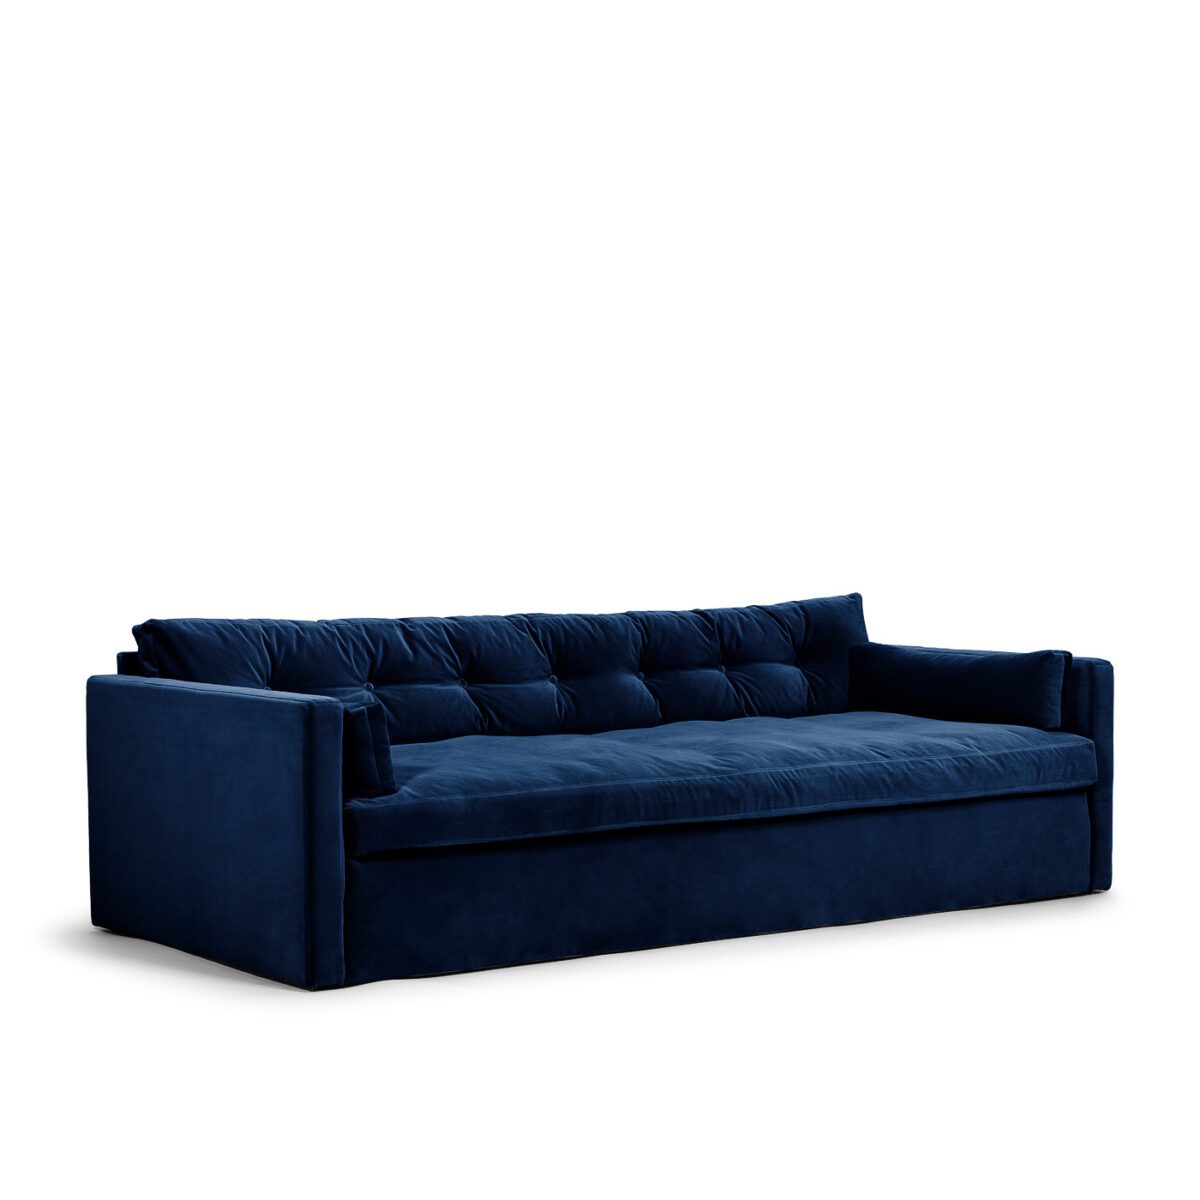 Dahlia Original 3-Seat Sofa Deep Blue